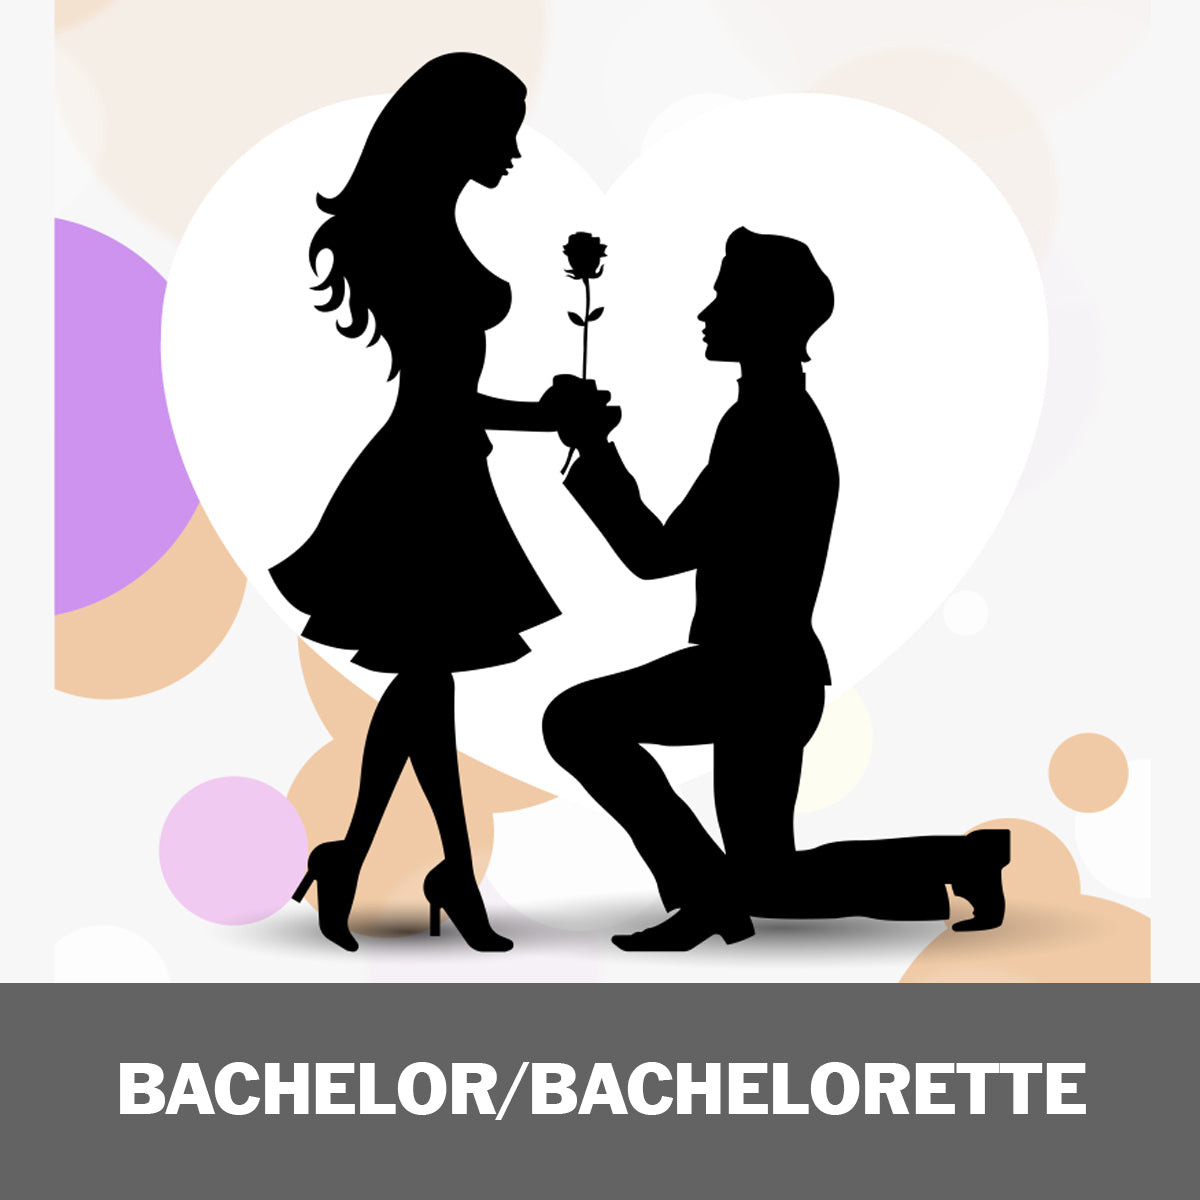 Bachelor / Bachelorette